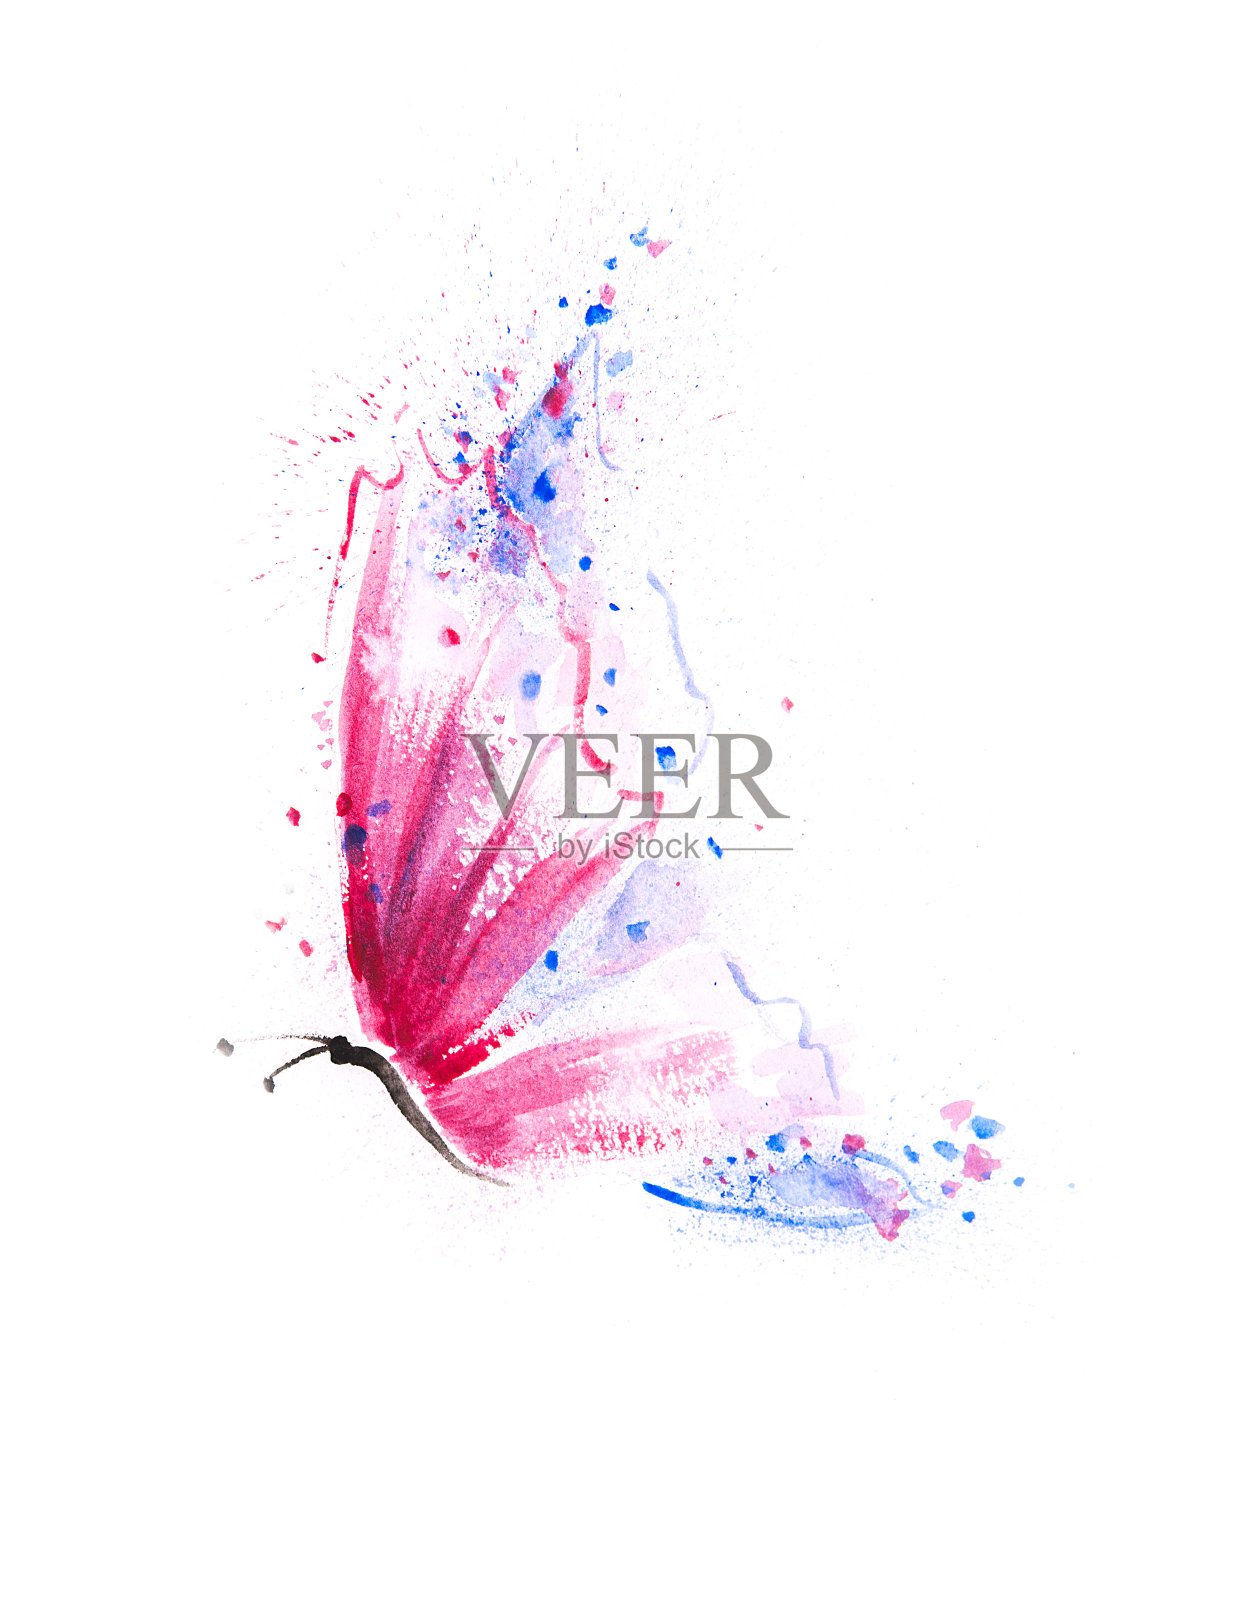 漂亮的手工绘制的蝴蝶与充满活力的粉红色，紫色和蓝色的翅膀插画图片素材